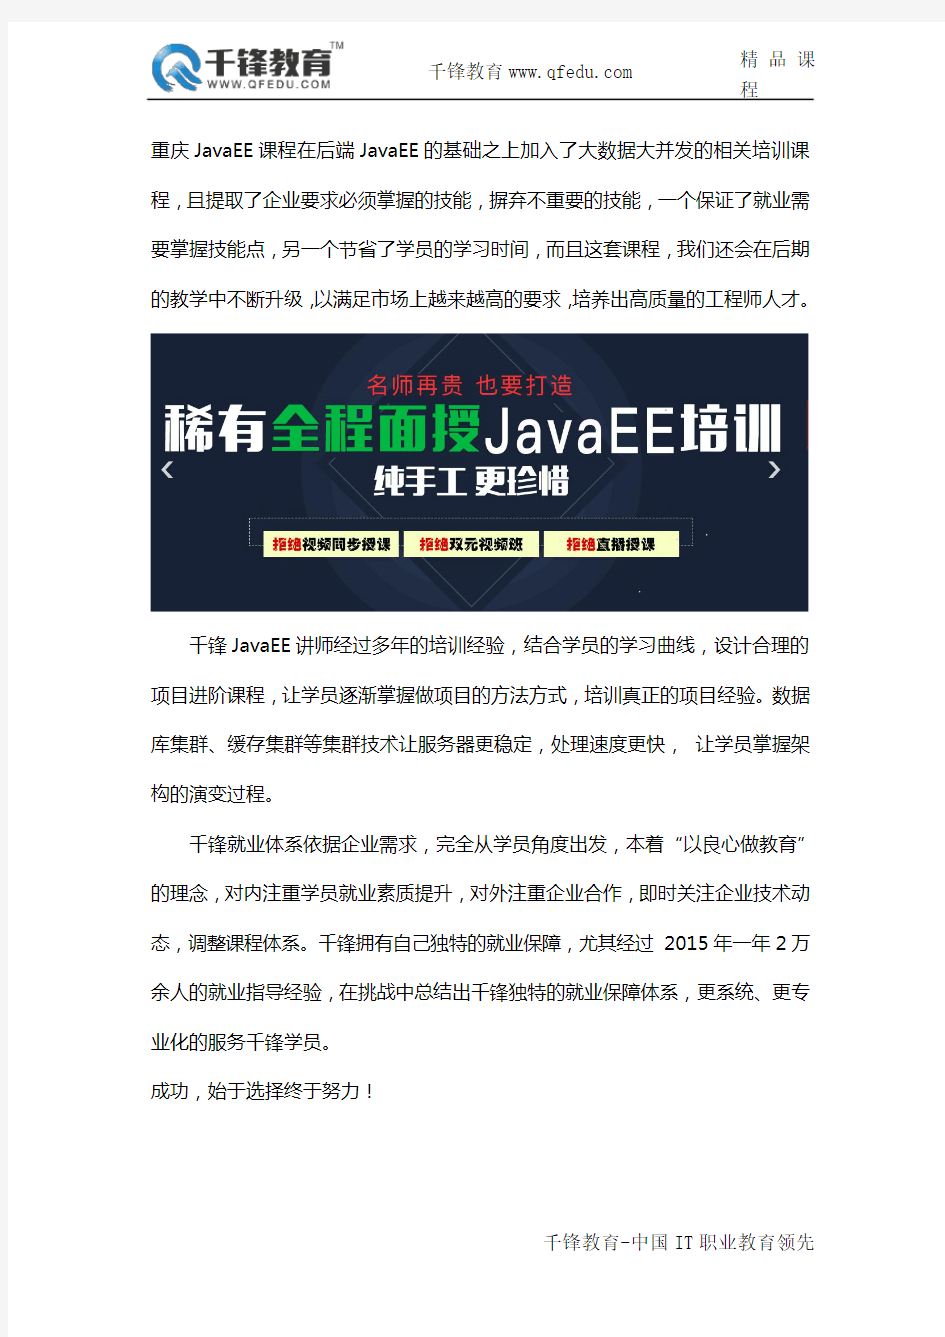 重庆也终于要开了Java EE培训班了